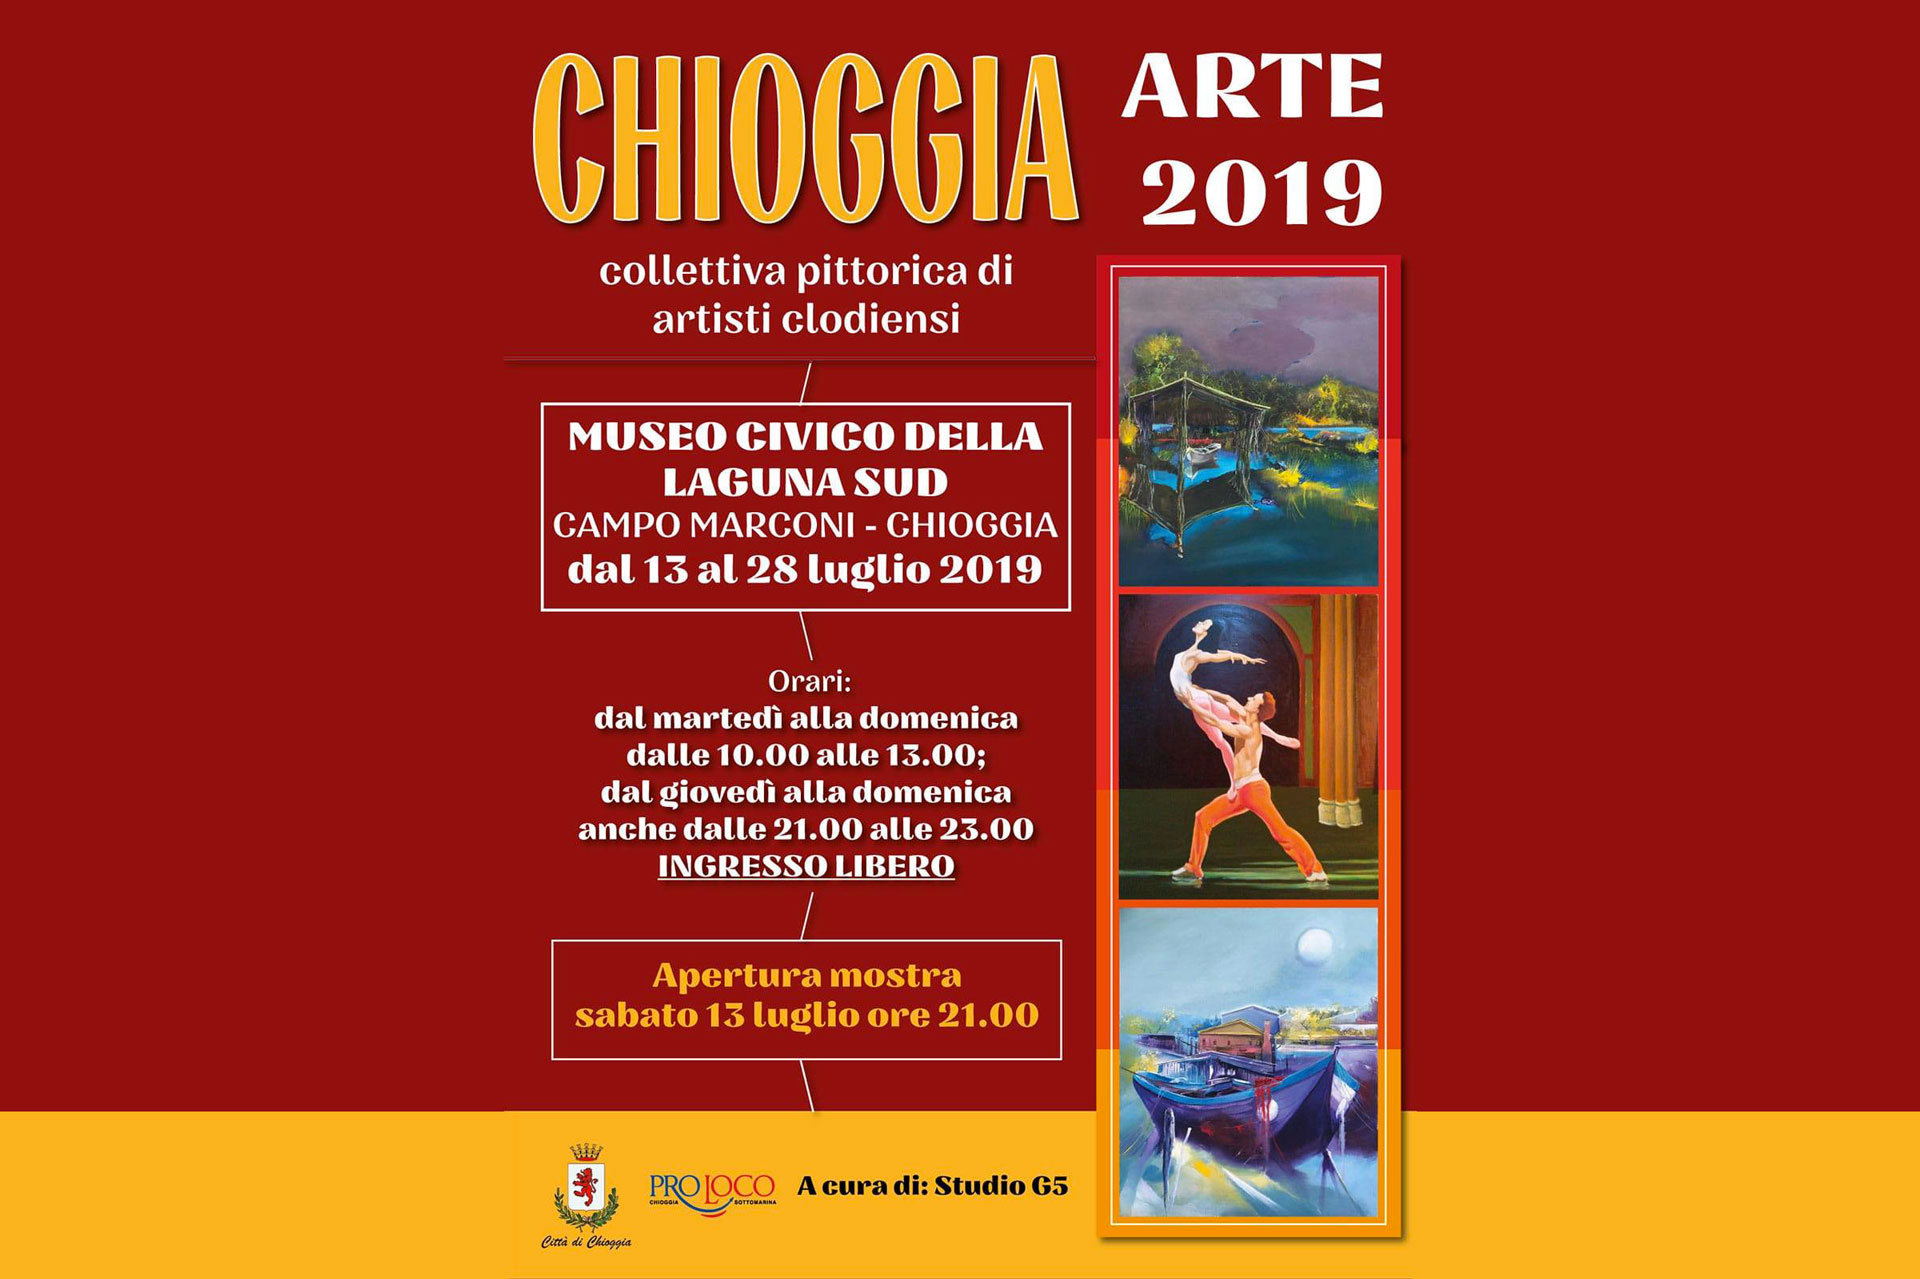 Chioggia Arte 2019 - Flyer